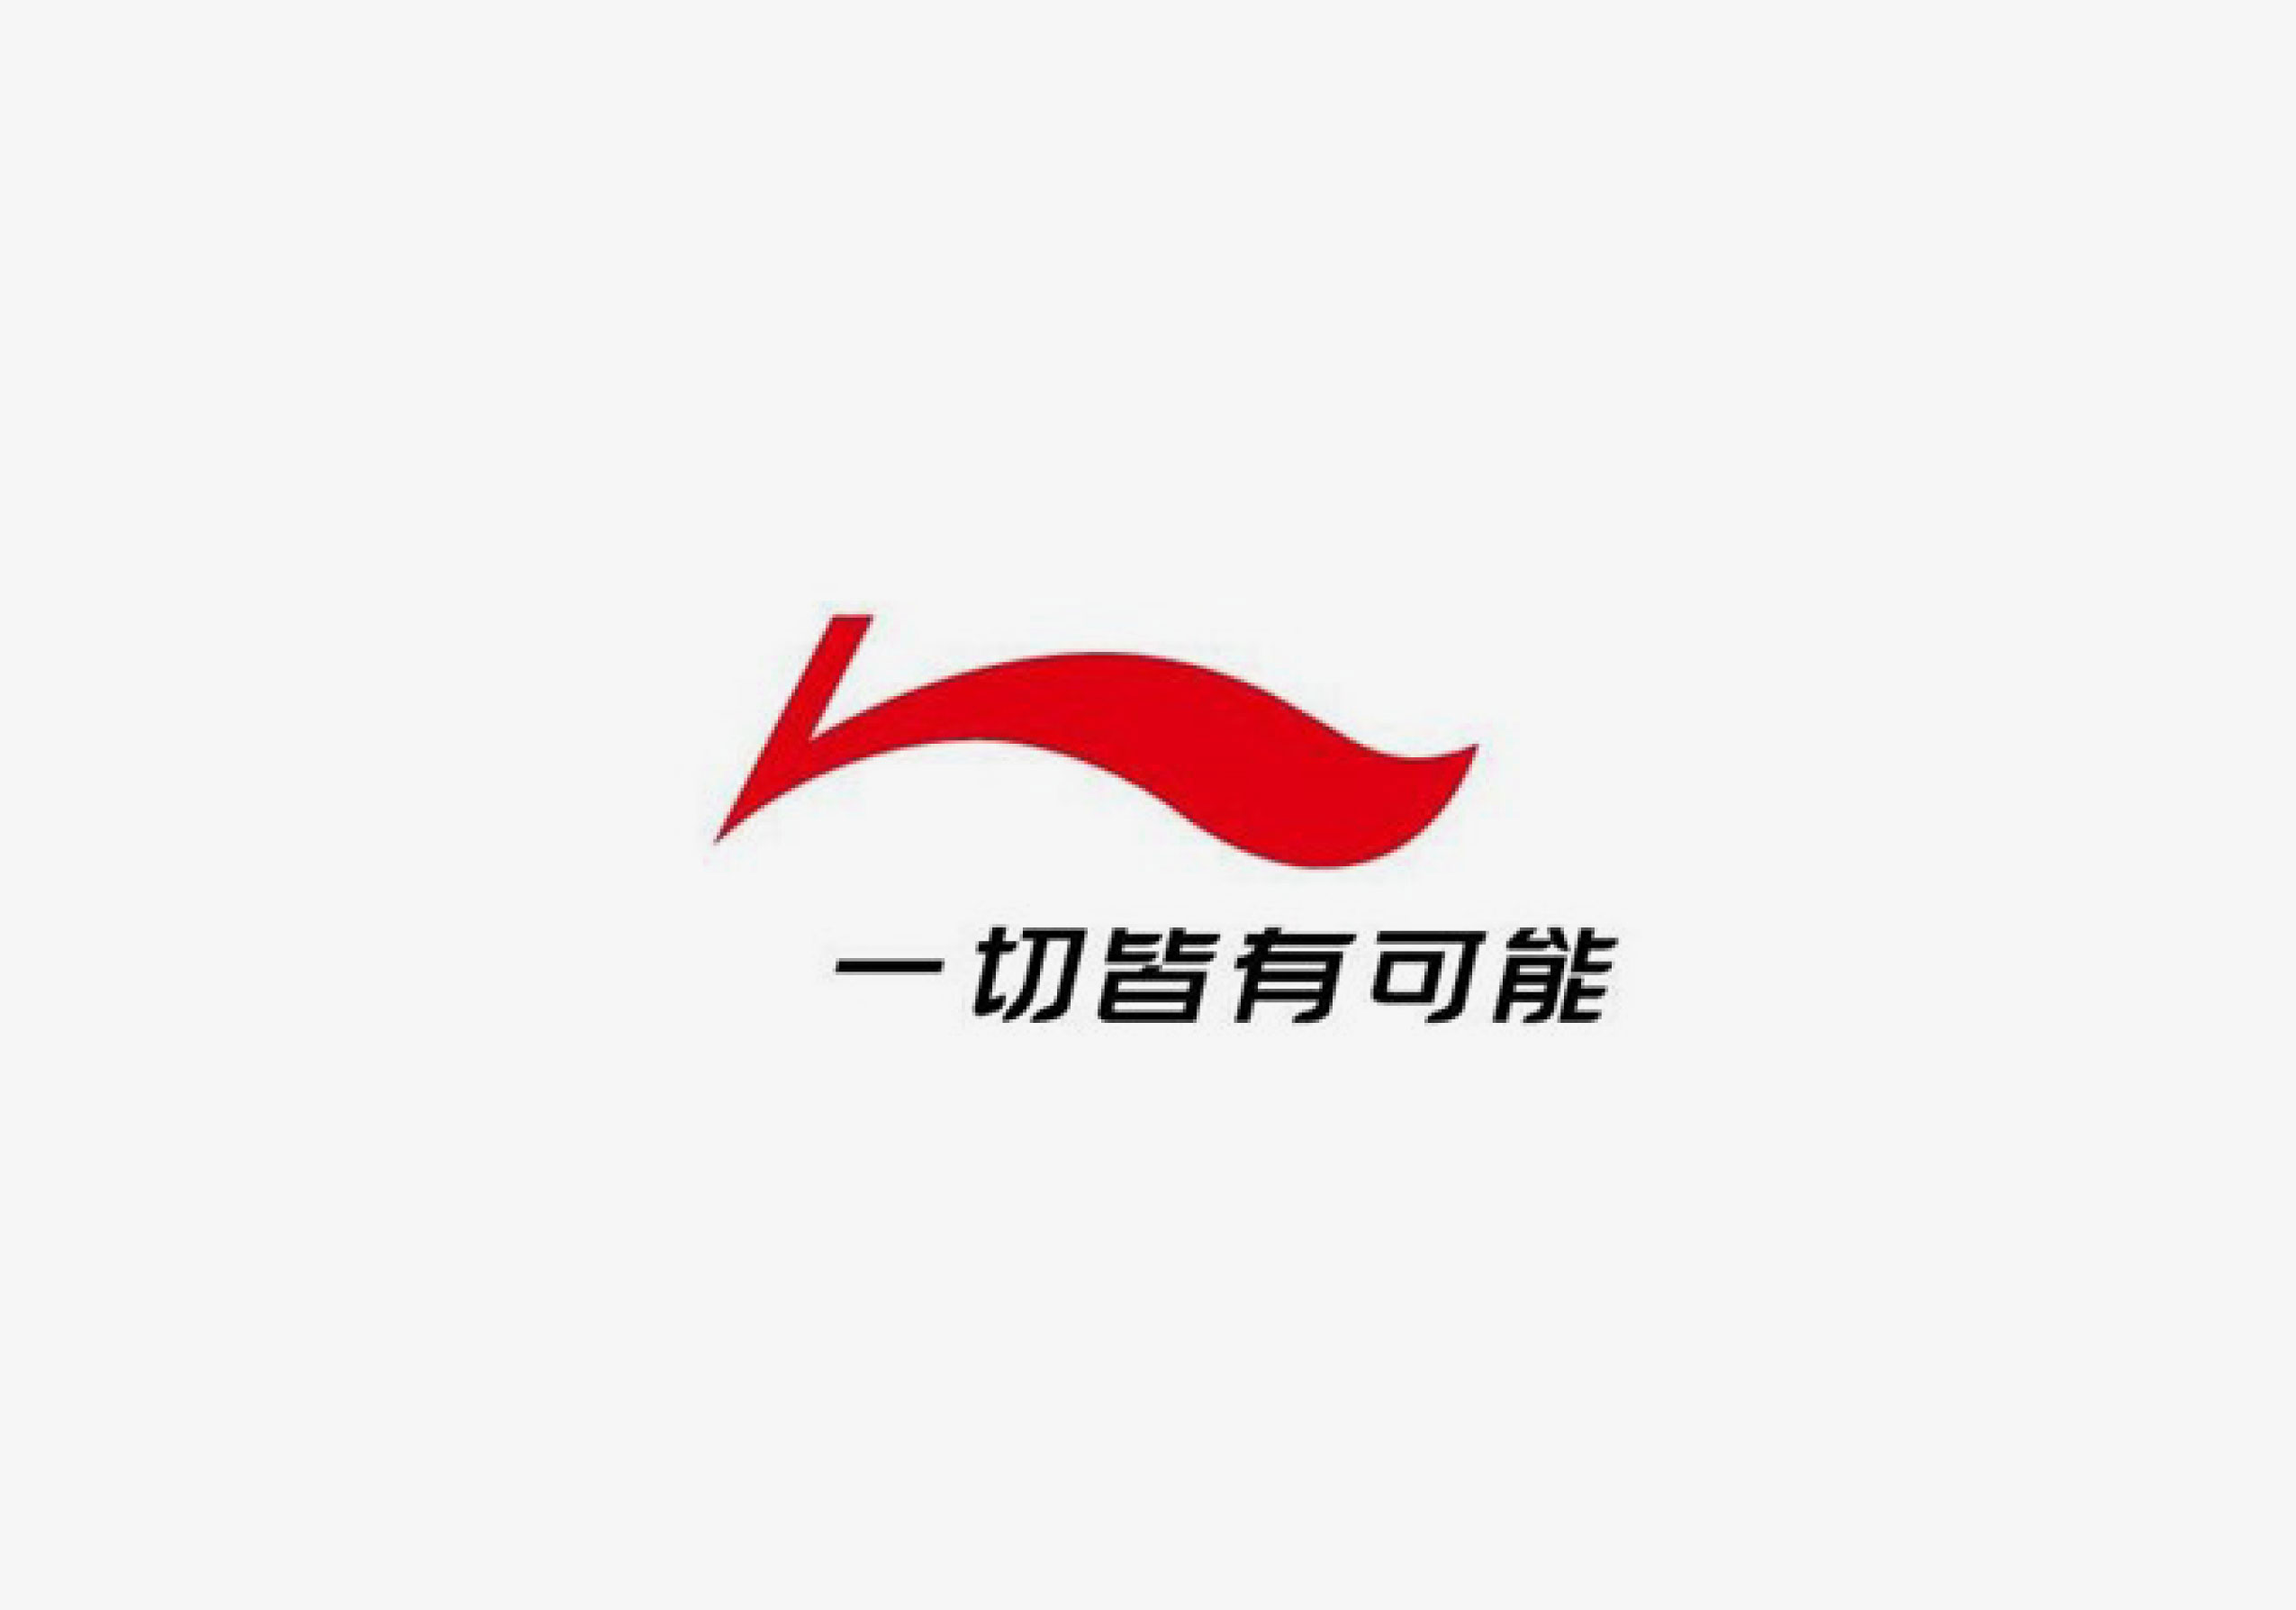 50李宁-2015_广告设计_公司logo设计_vi系统_北京